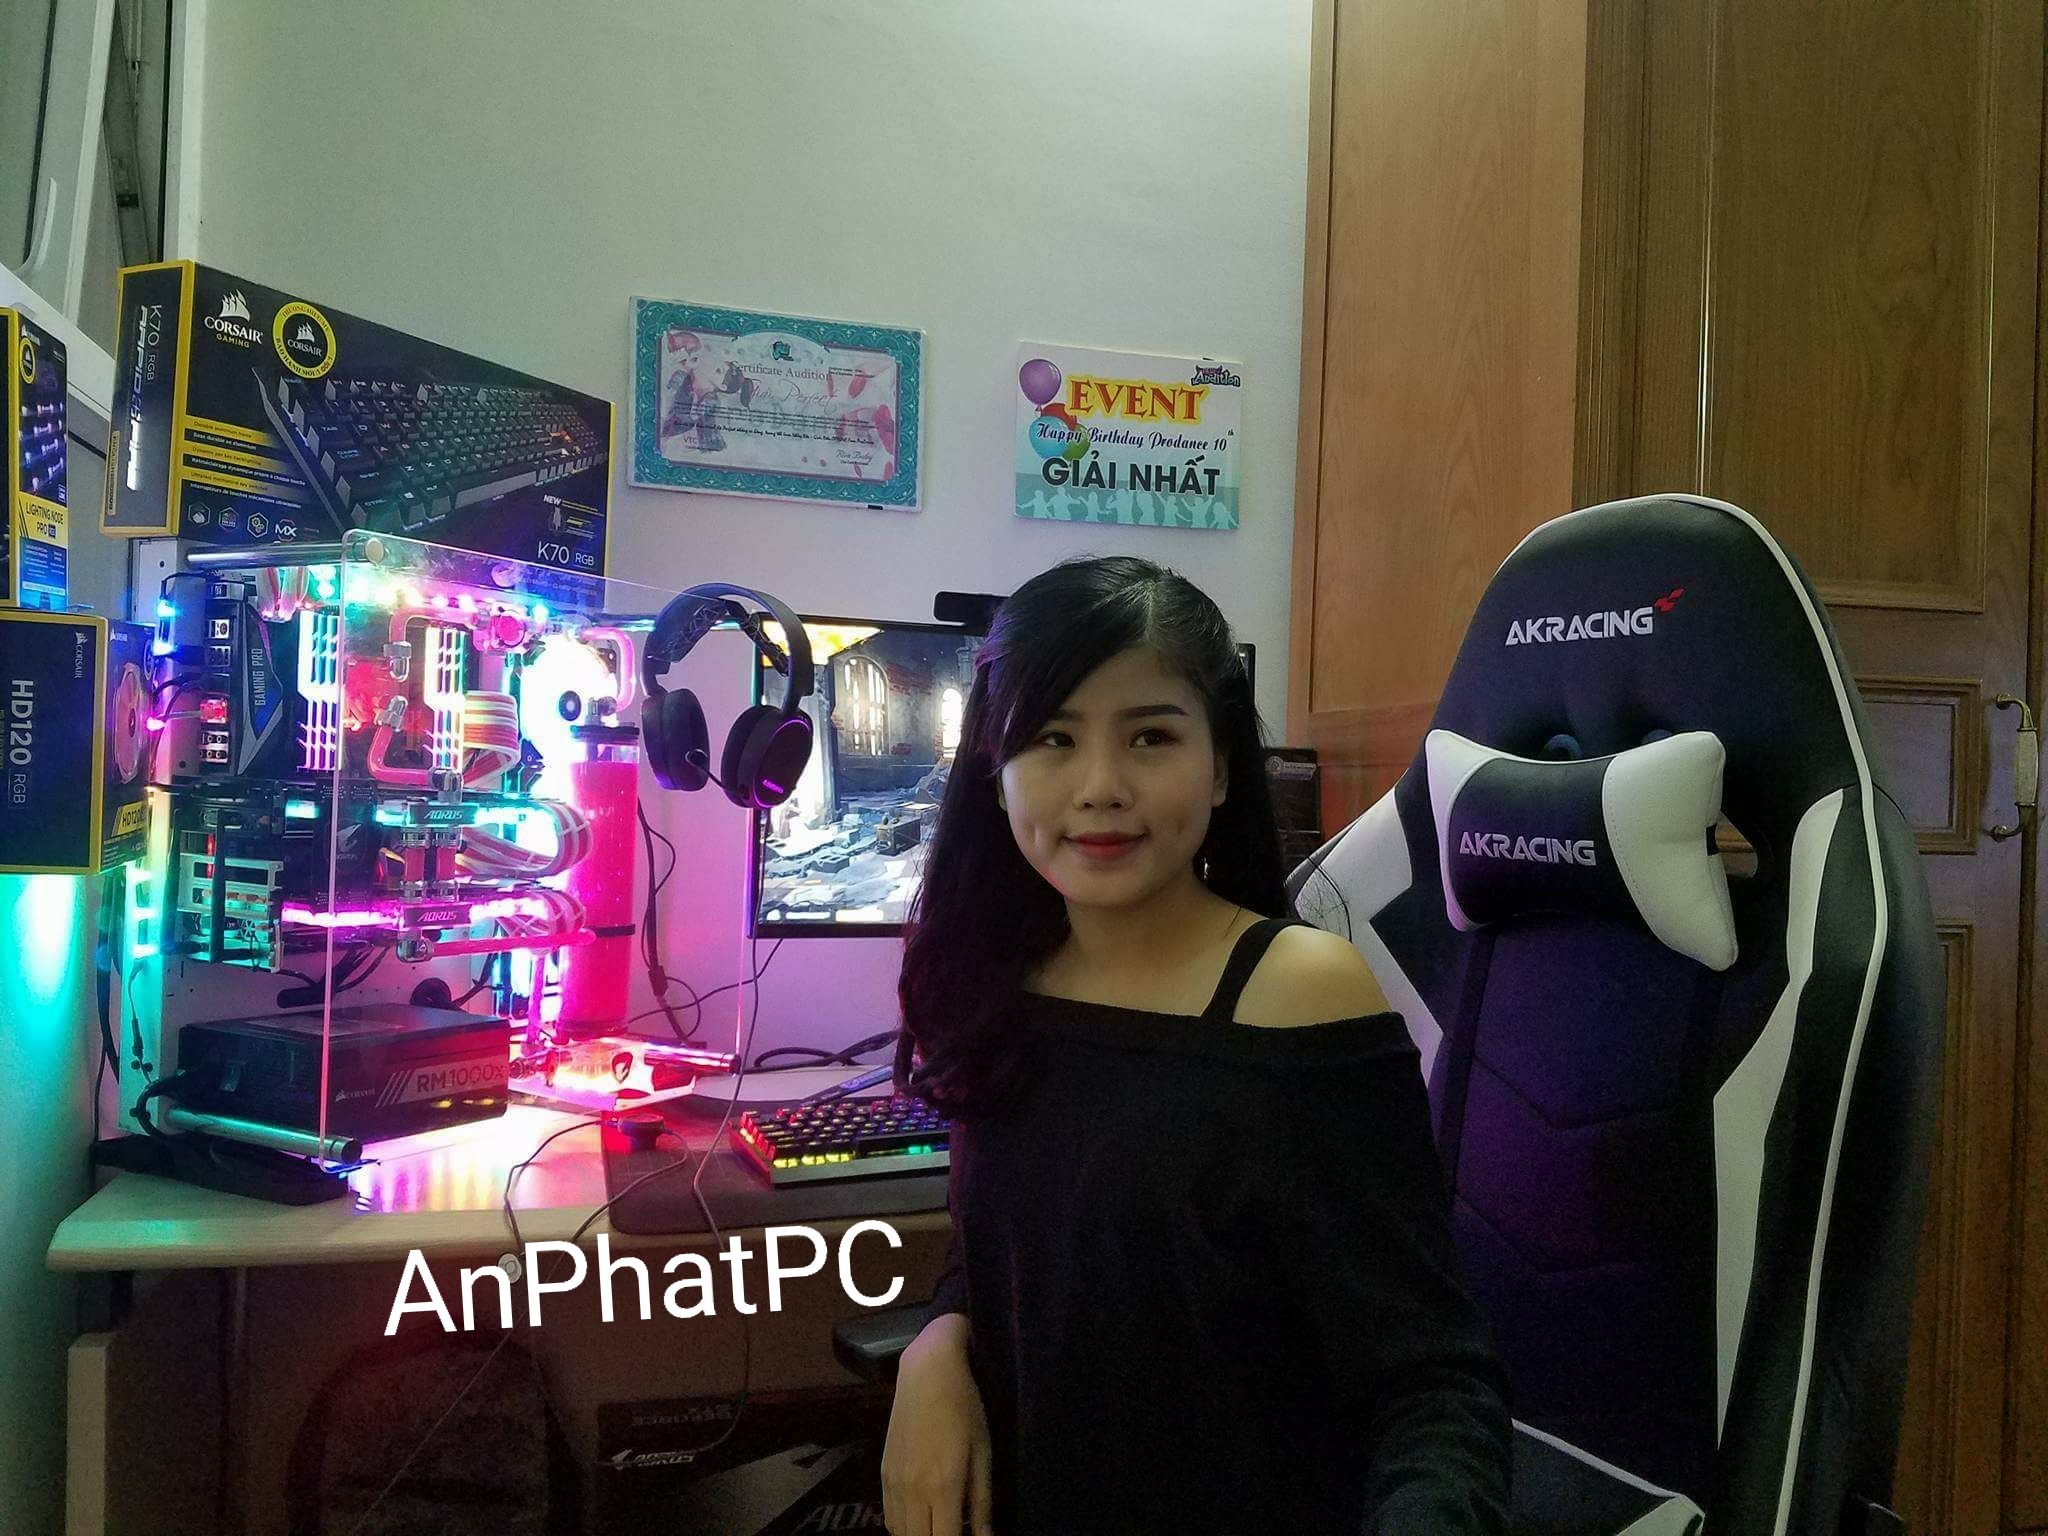 Dàn PC độ đèn LED màu hồng nữ tính giá 150 triệu đồng ở Hà Nội | ZING